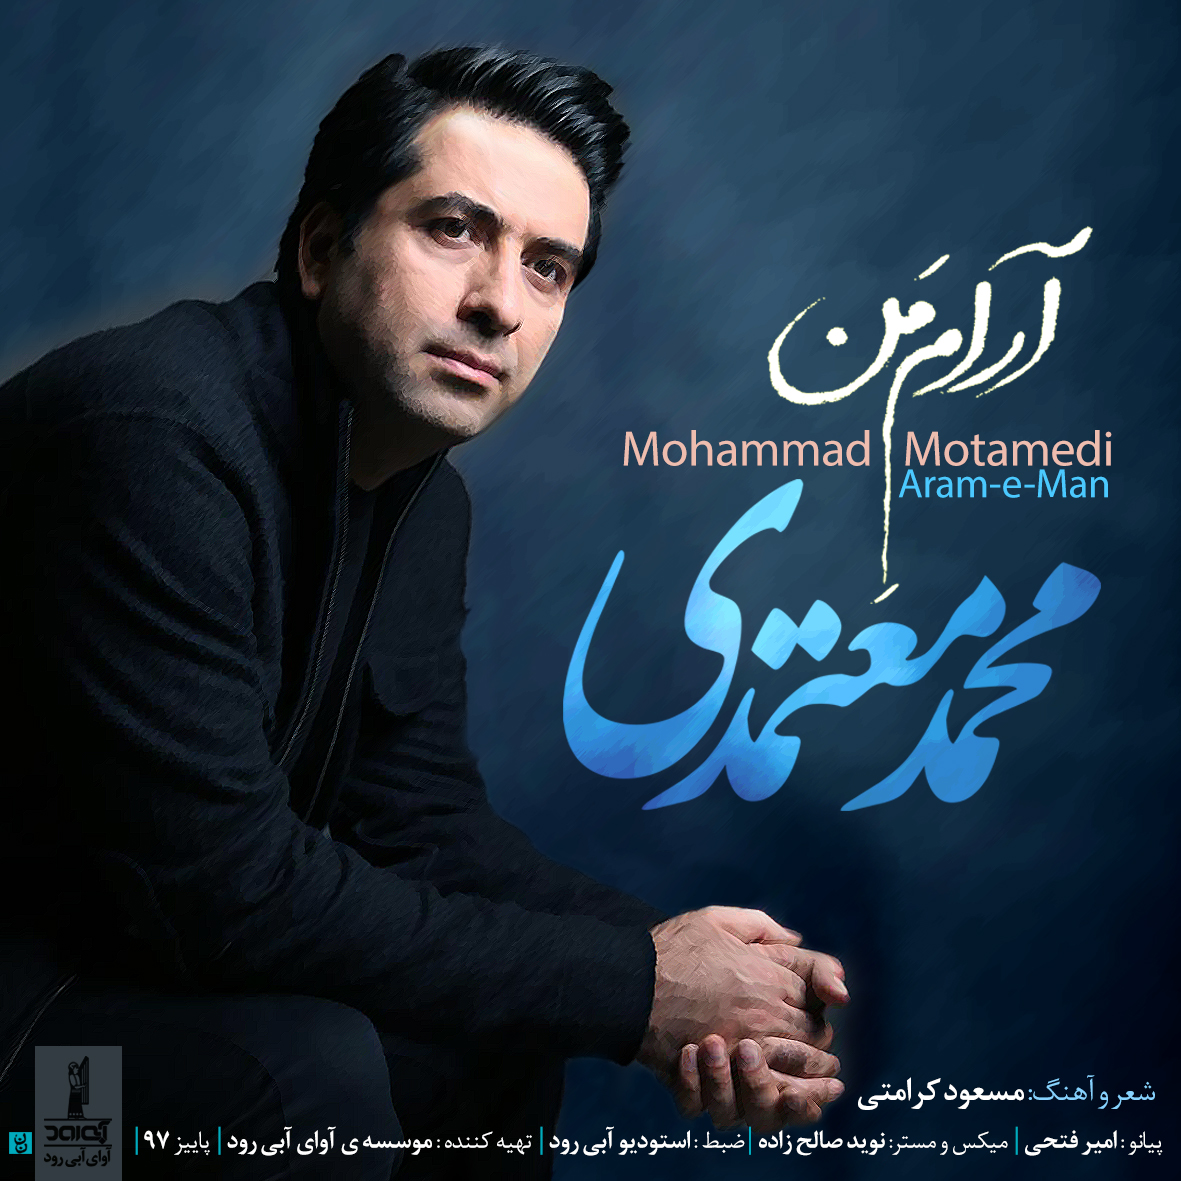  دانلود آهنگ جدید محمد معتمدی - آرام من | Download New Music By Mohammad Motamedi - Arame Man